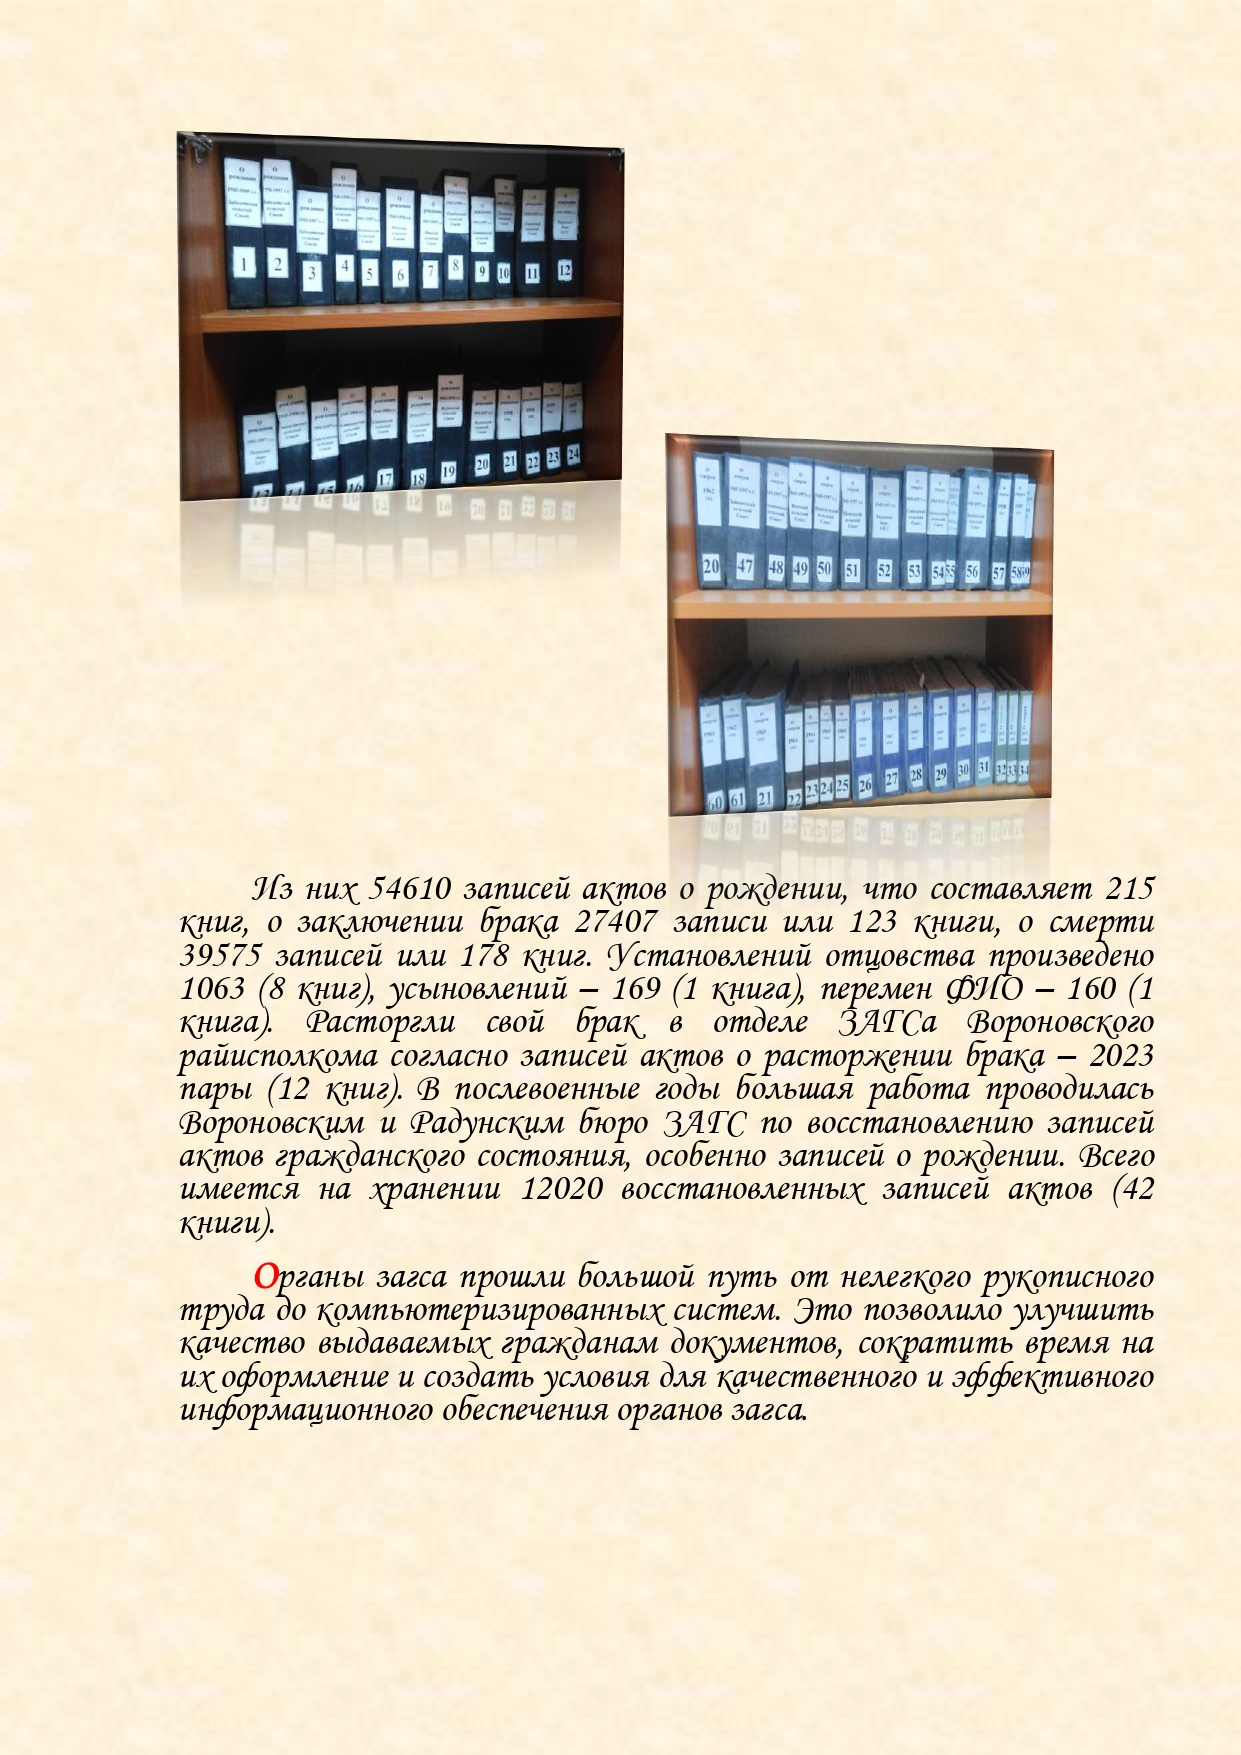 История органов загса Вороновского района с изменениями (1)_page-0015.jpg